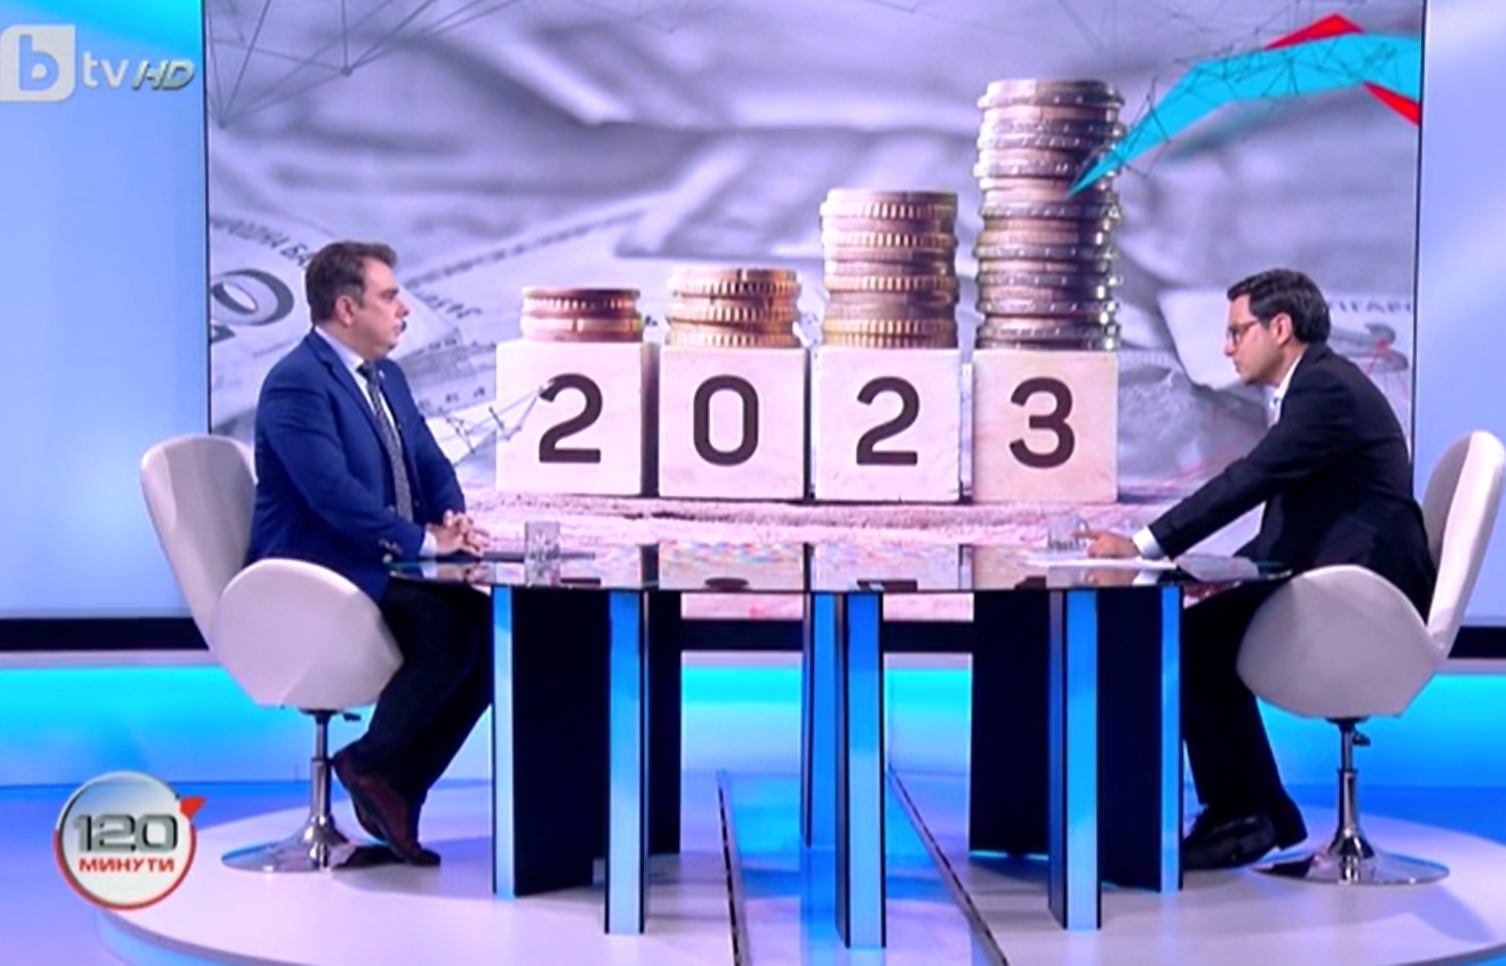 Интервю на министъра на финансите Асен Василев в предаването "120 минути" по bTV